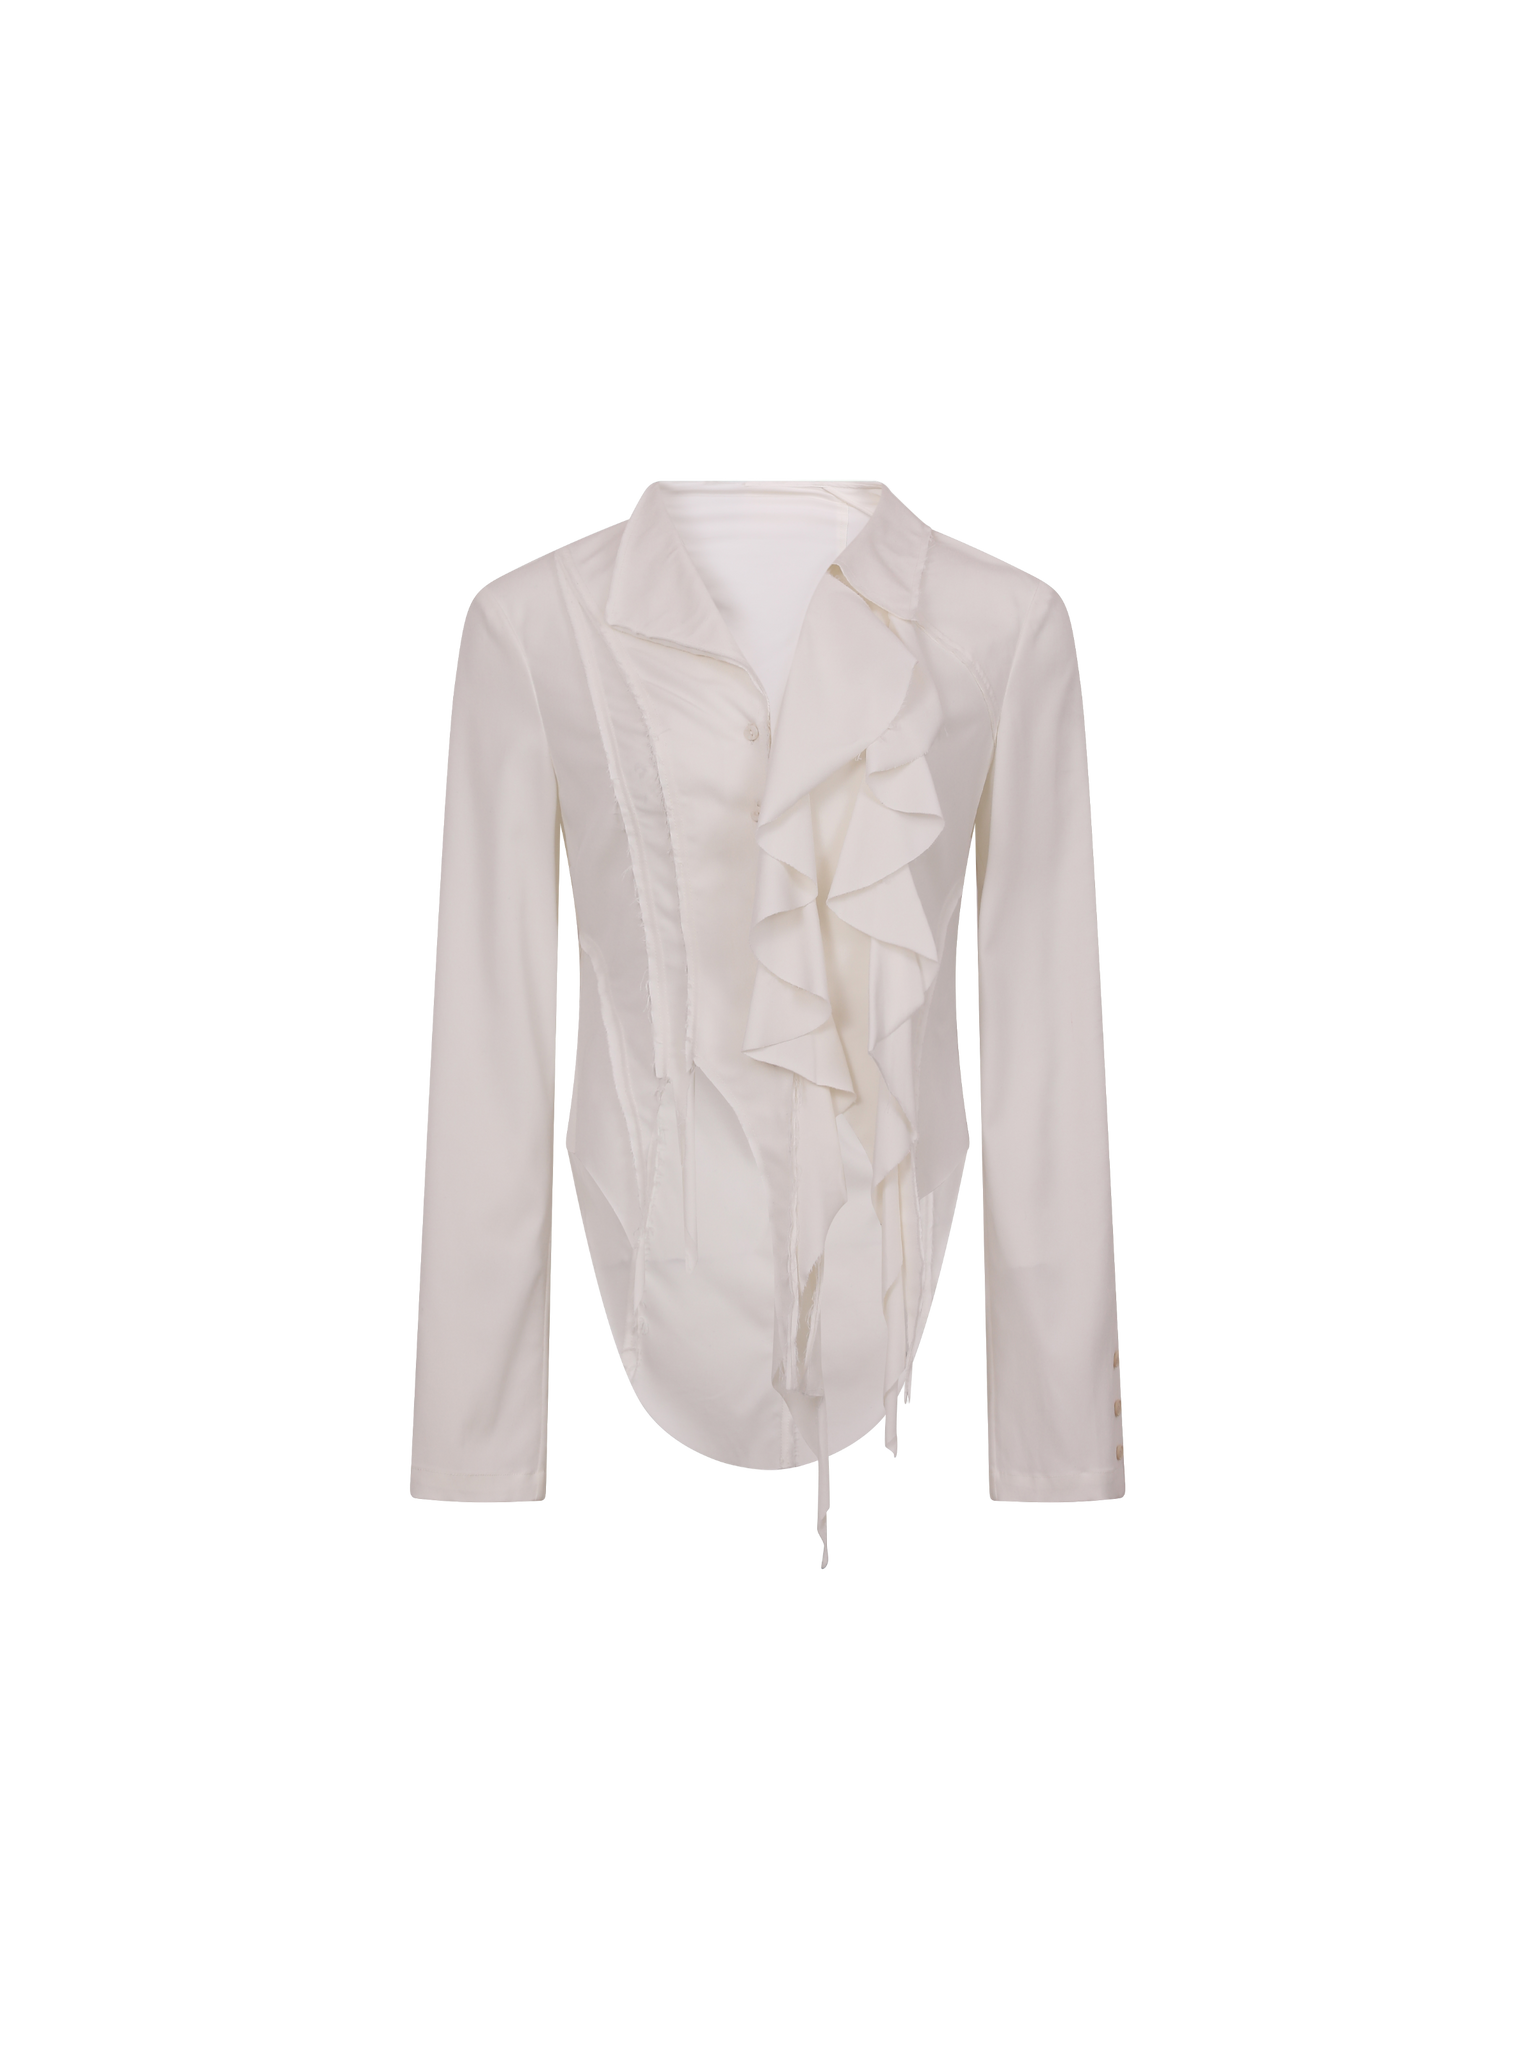 White Layered Lace Shirt